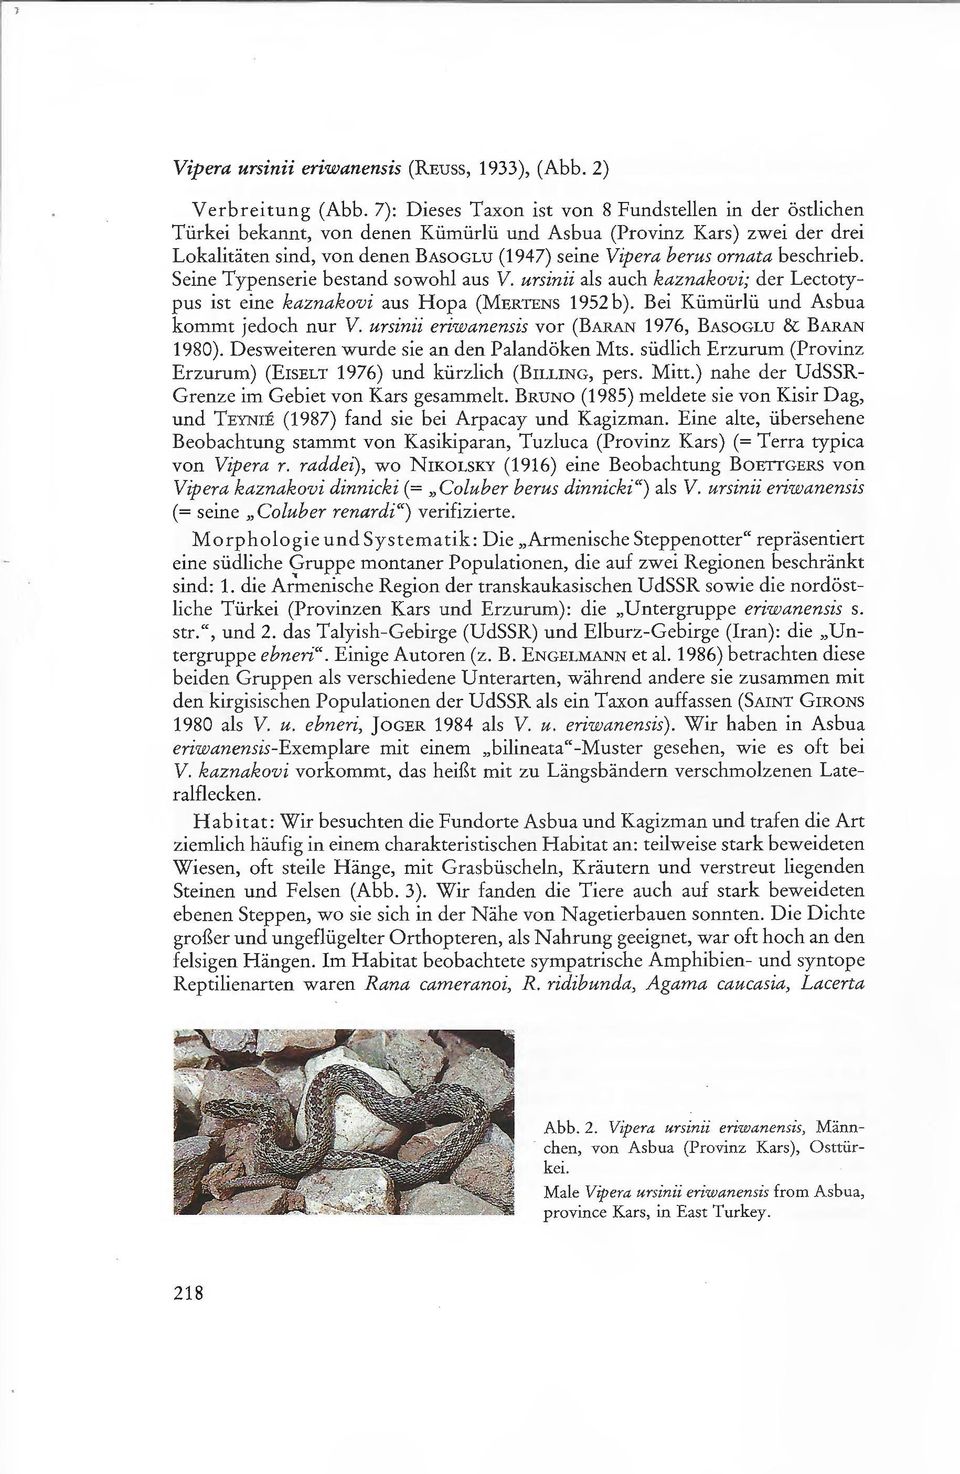 beschrieb. Seine Typenserie bestand sowohl aus V. ursinii als auch kaznakovi; der Lectotypus ist eine kaznakovi aus Hopa (MERTENS 1952 b ). Bei Kümürlü und Asbua kommt jedoch nur V.